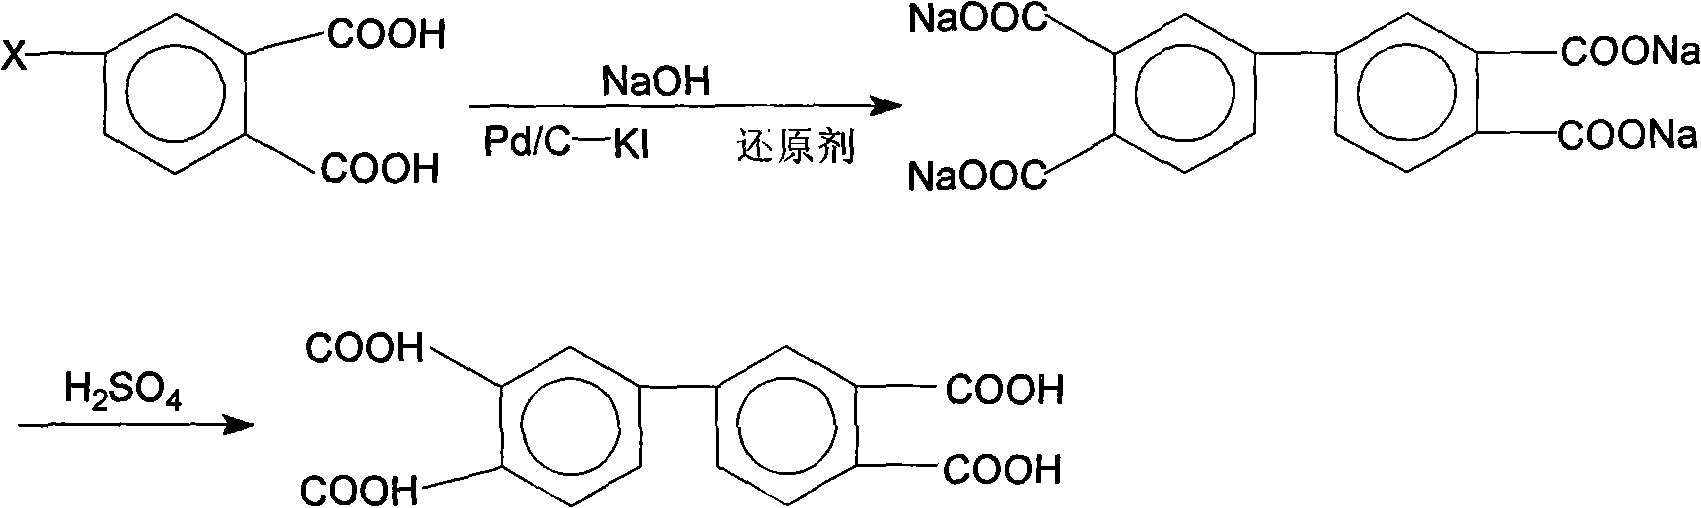 Preparation method of 3,3',4,4'-tetra carboxylic acid biphenyl